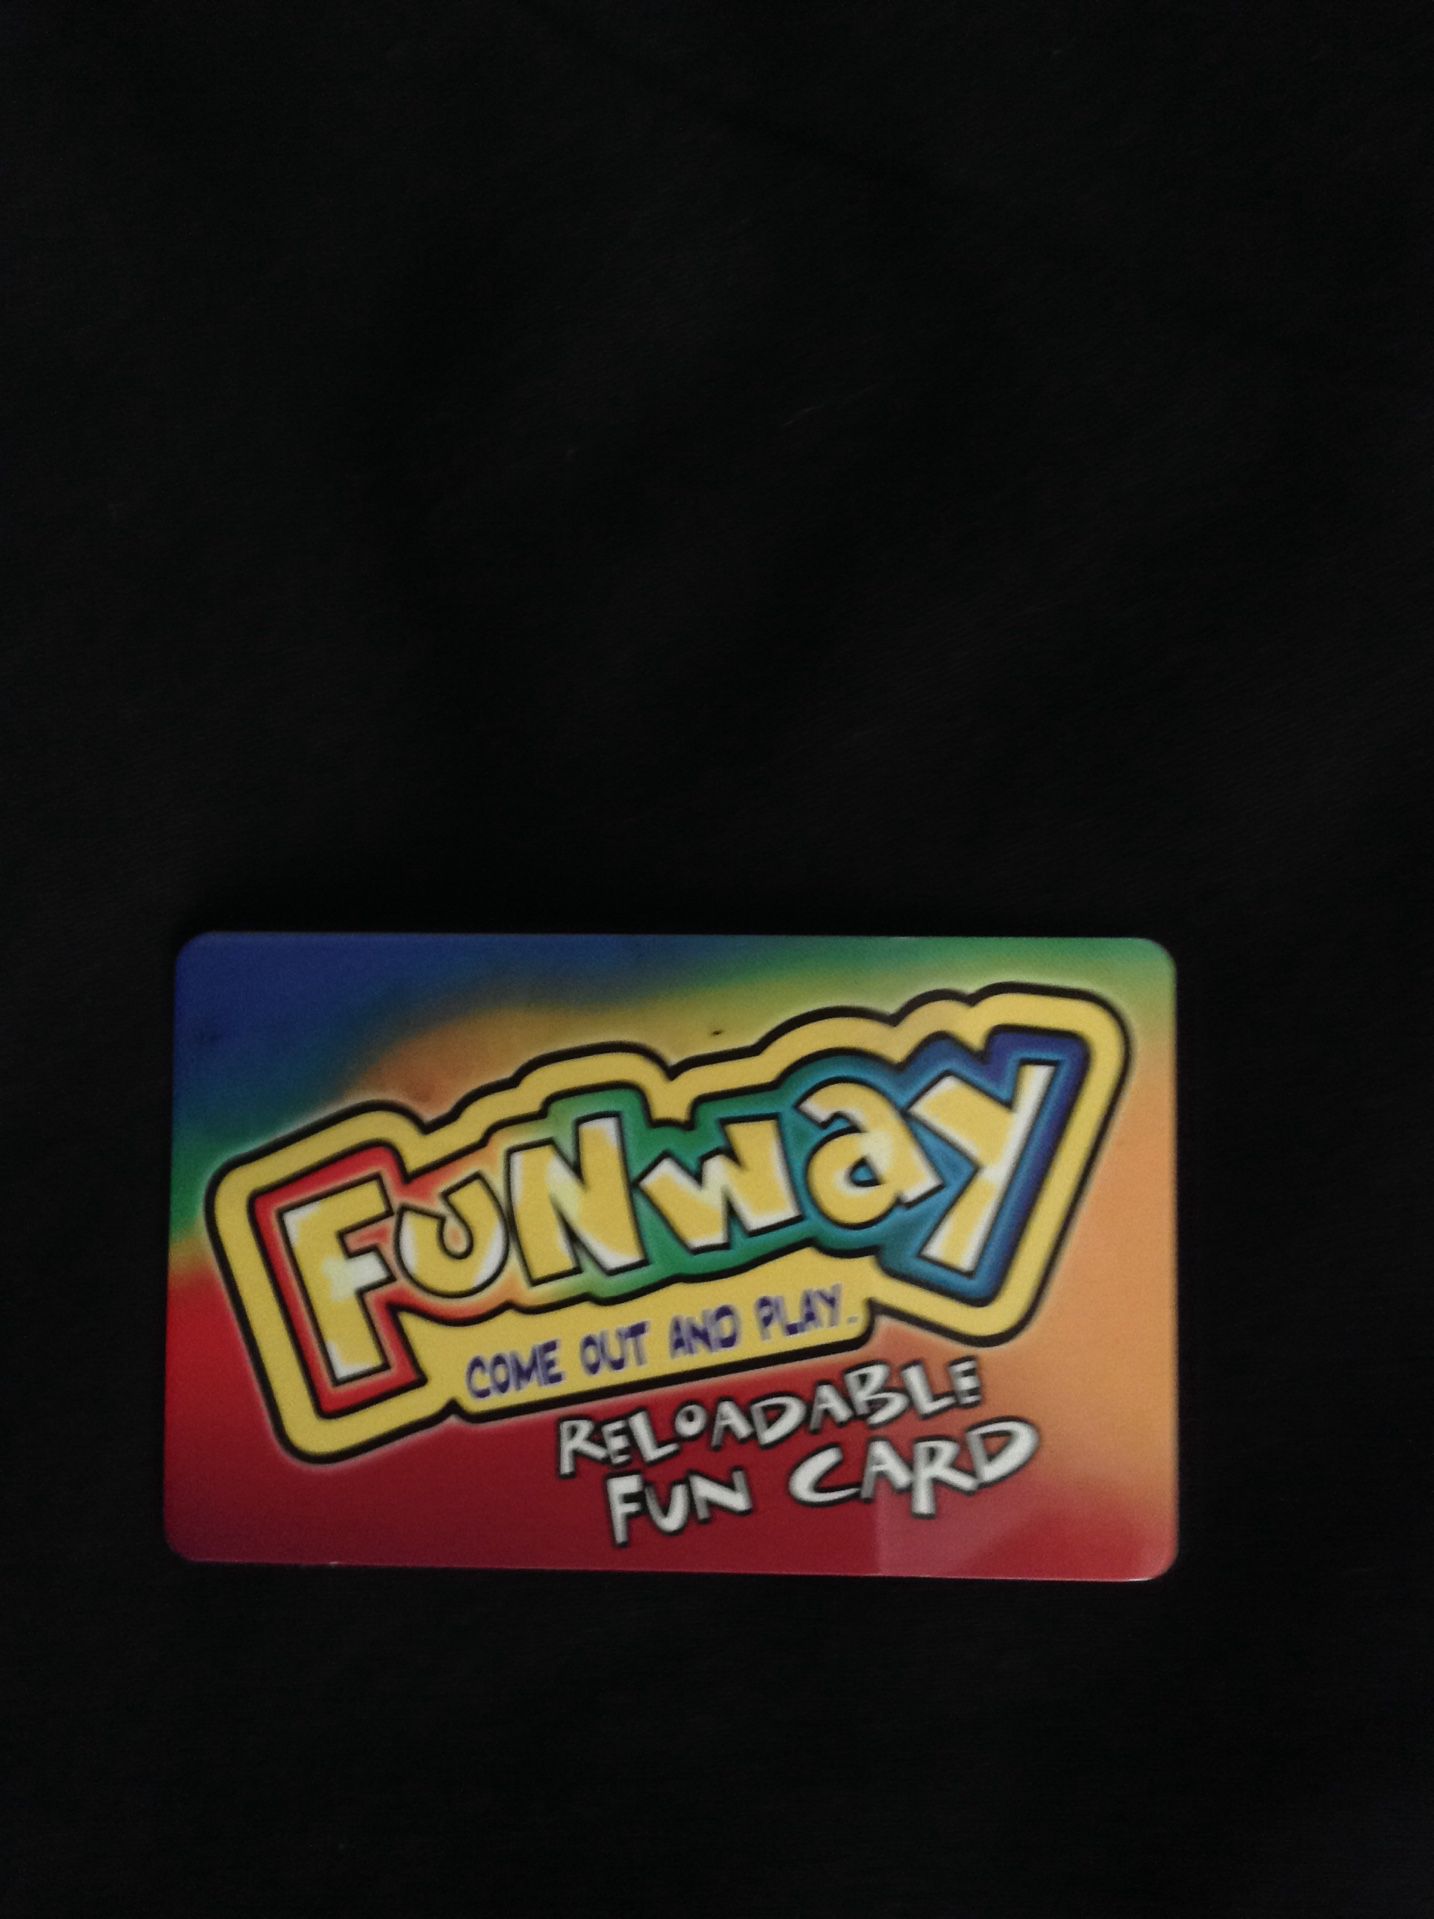 Funway card